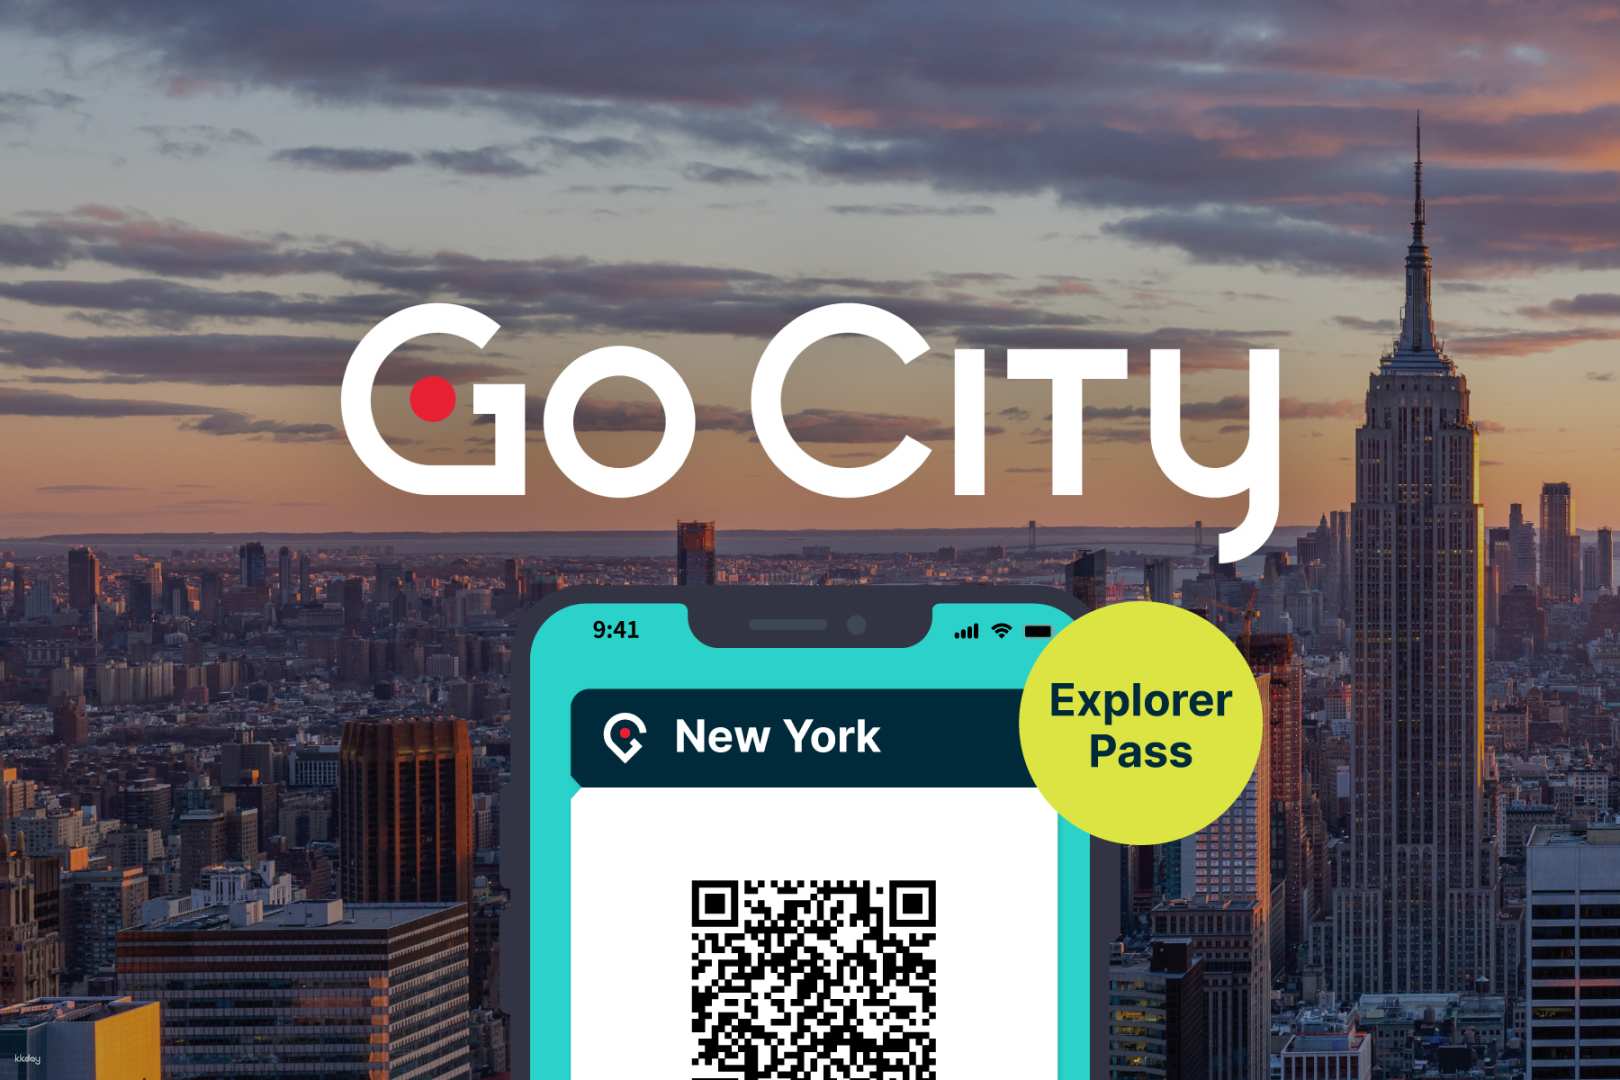 美國-紐約探索者通行證 New York Explorer Pass| 任選紐約必去景點